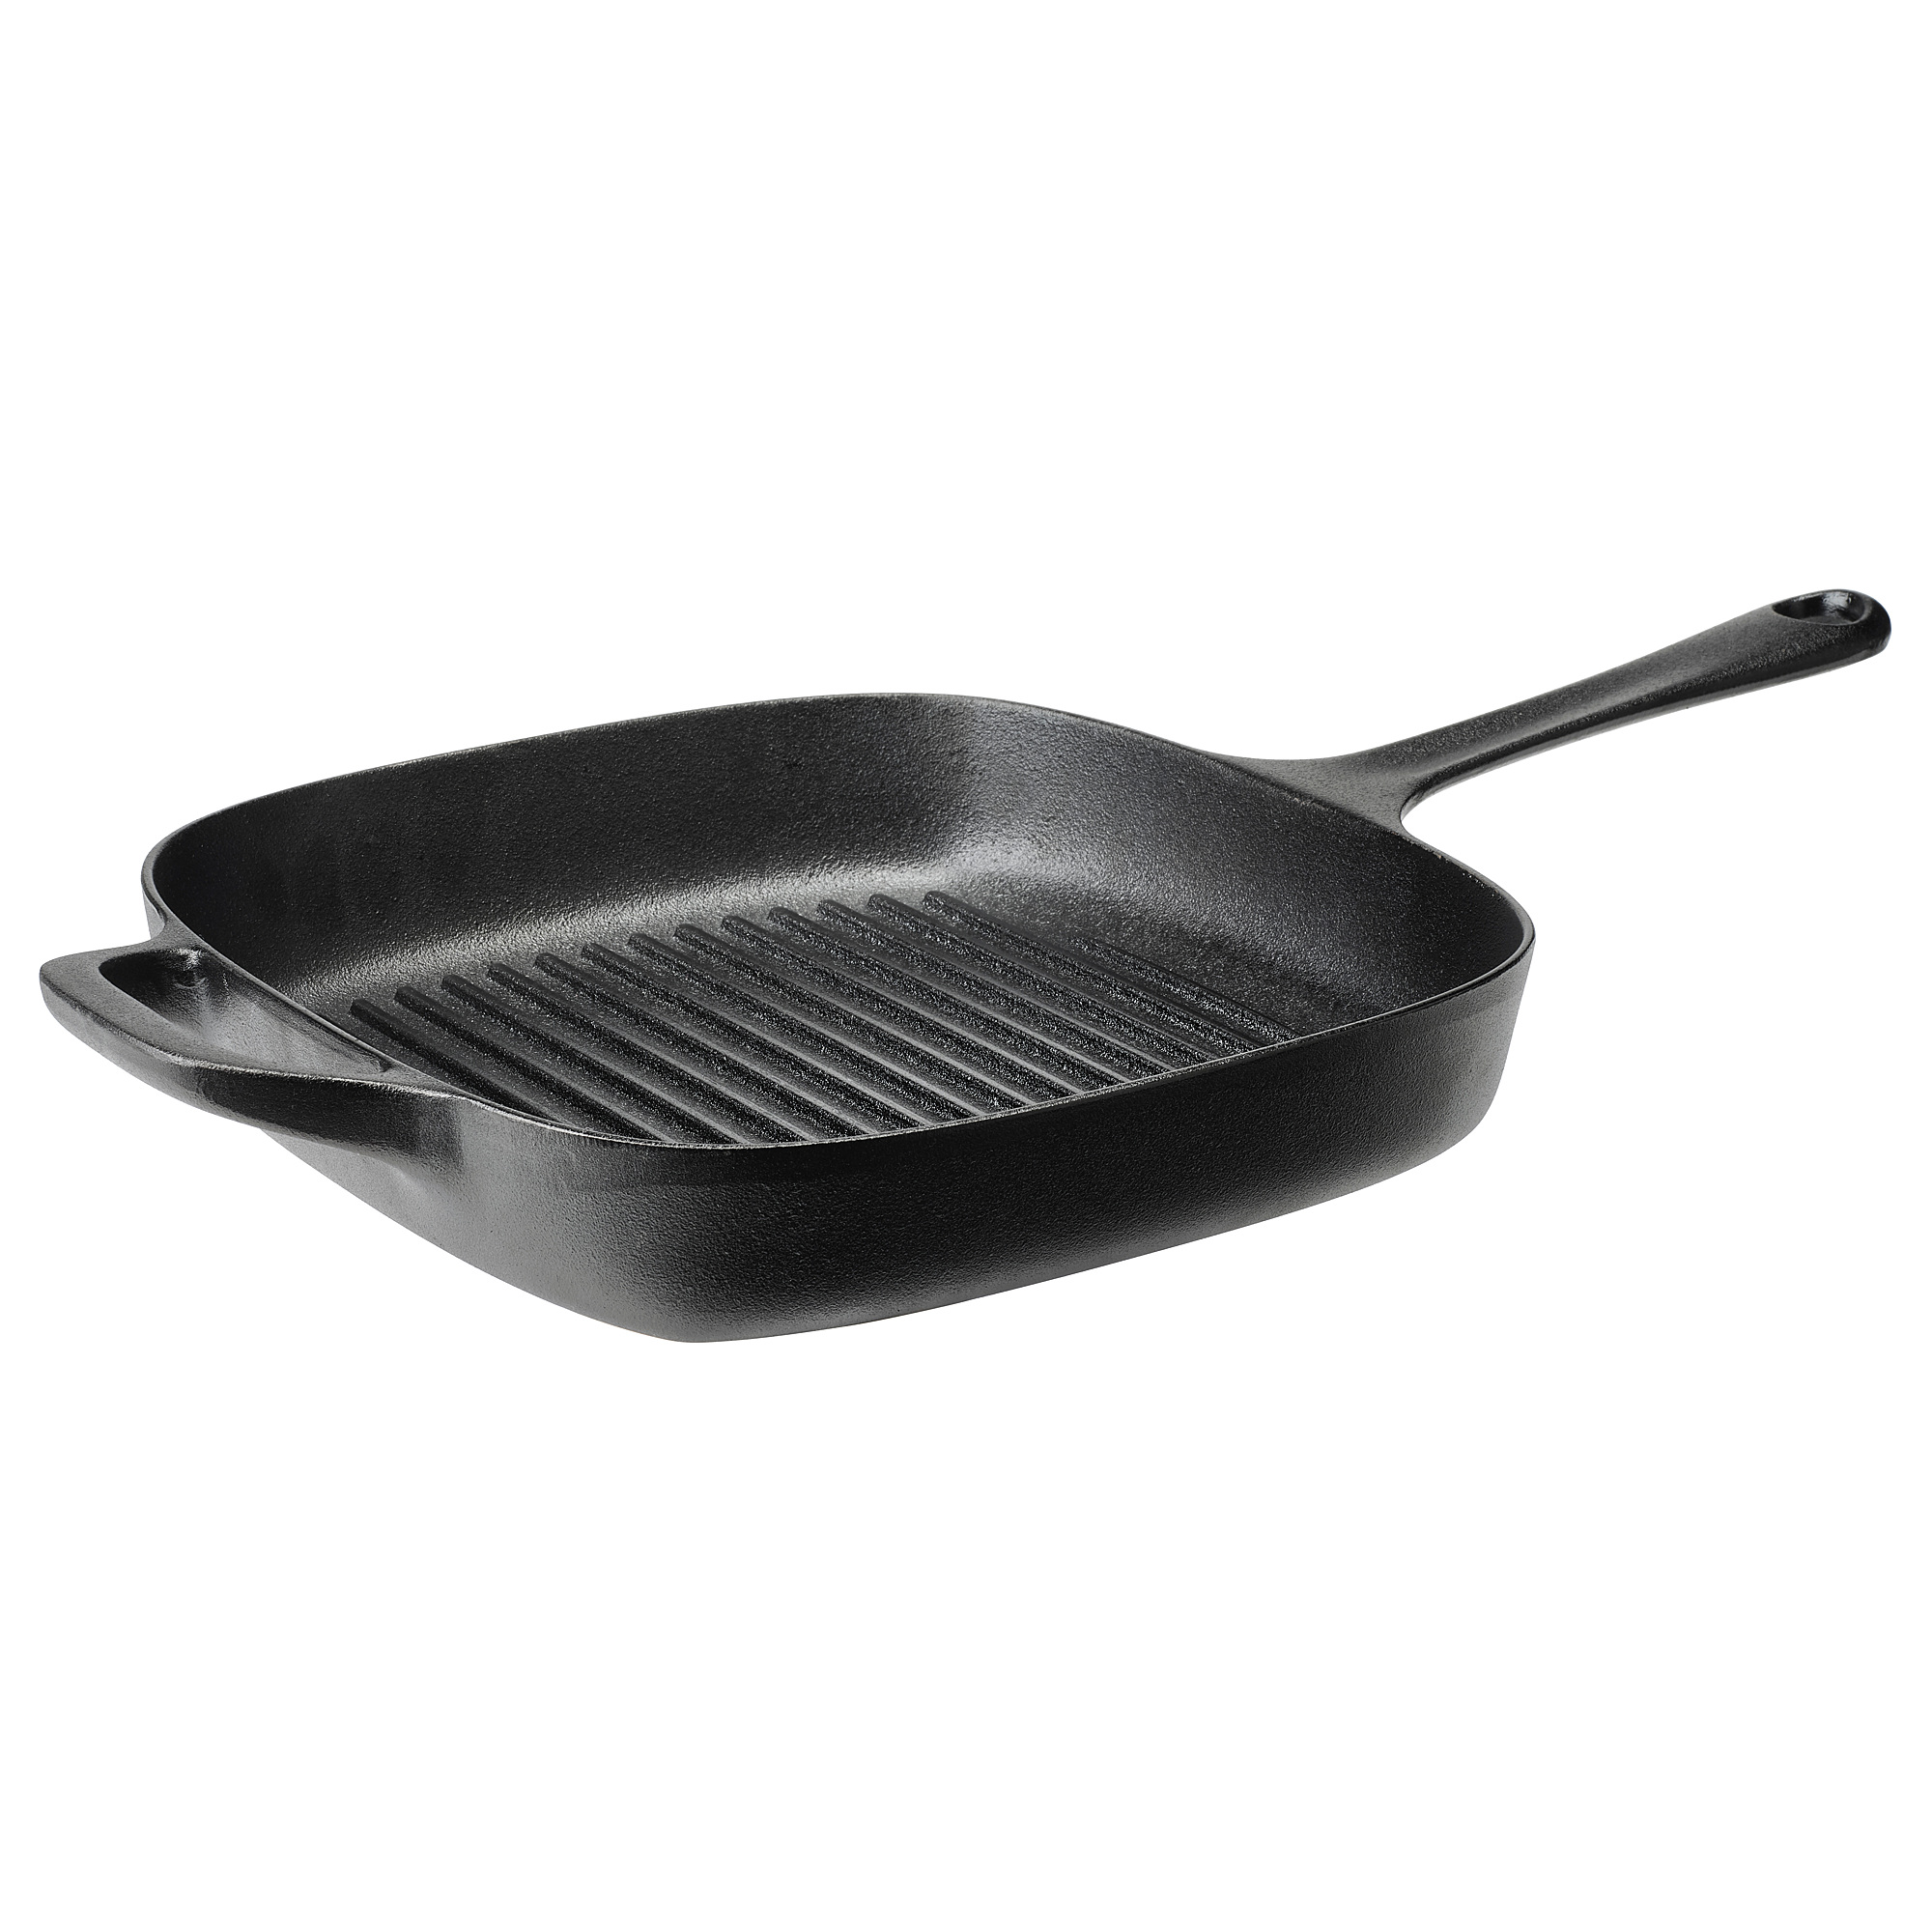 VARDAGEN grill pan